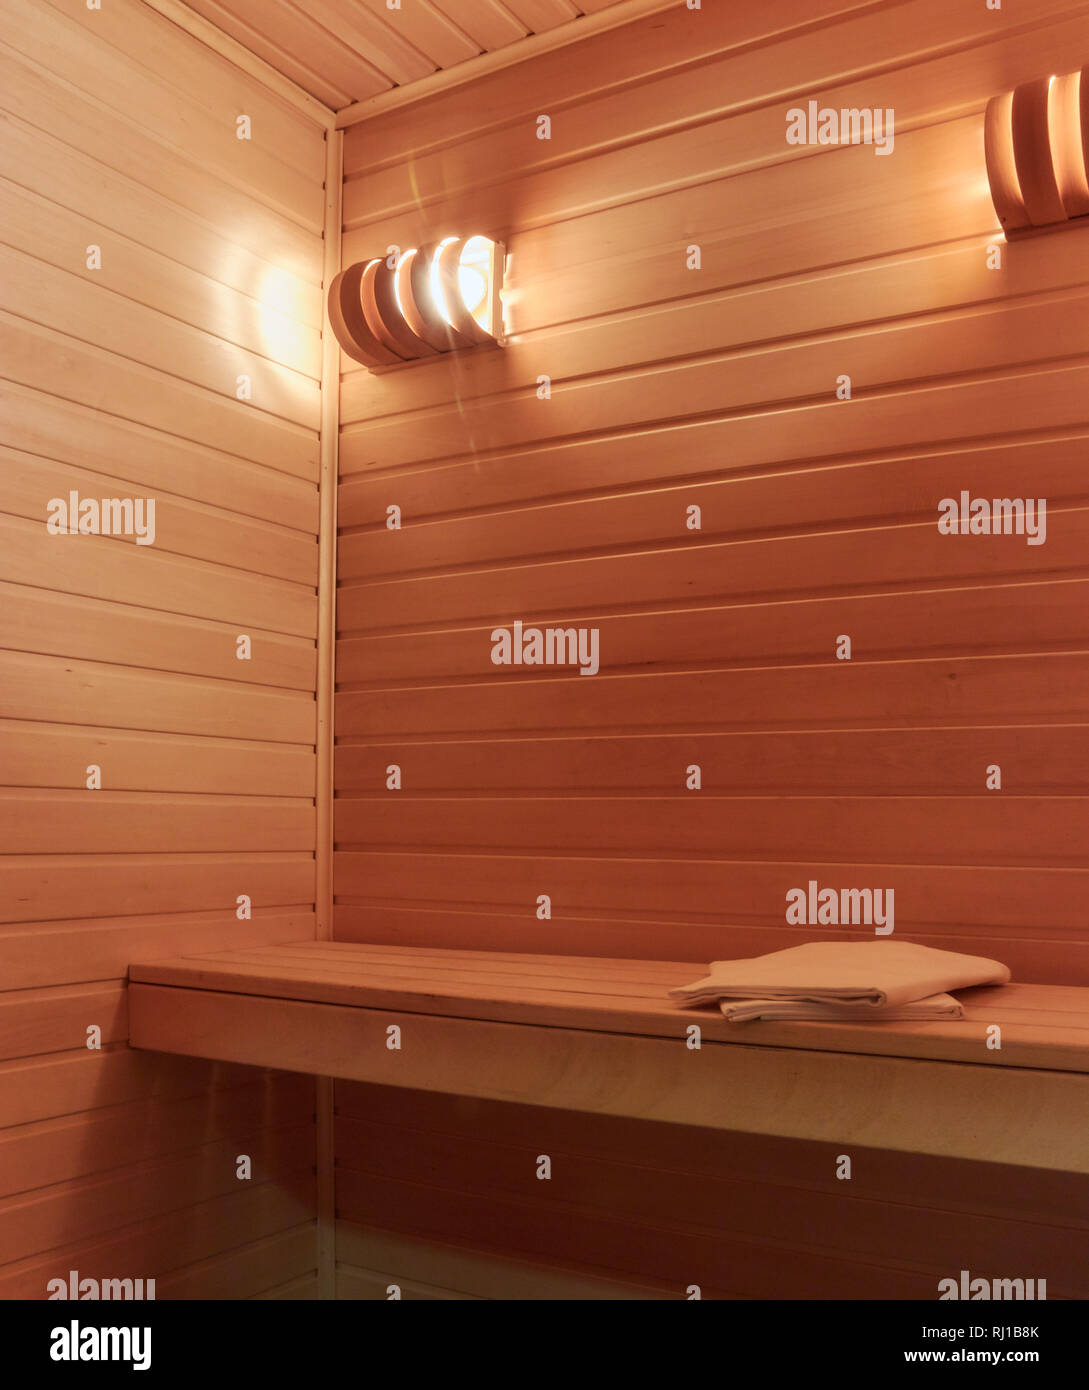 Imagen de sauna interior. Cerca. Copie el espacio. Foto de stock